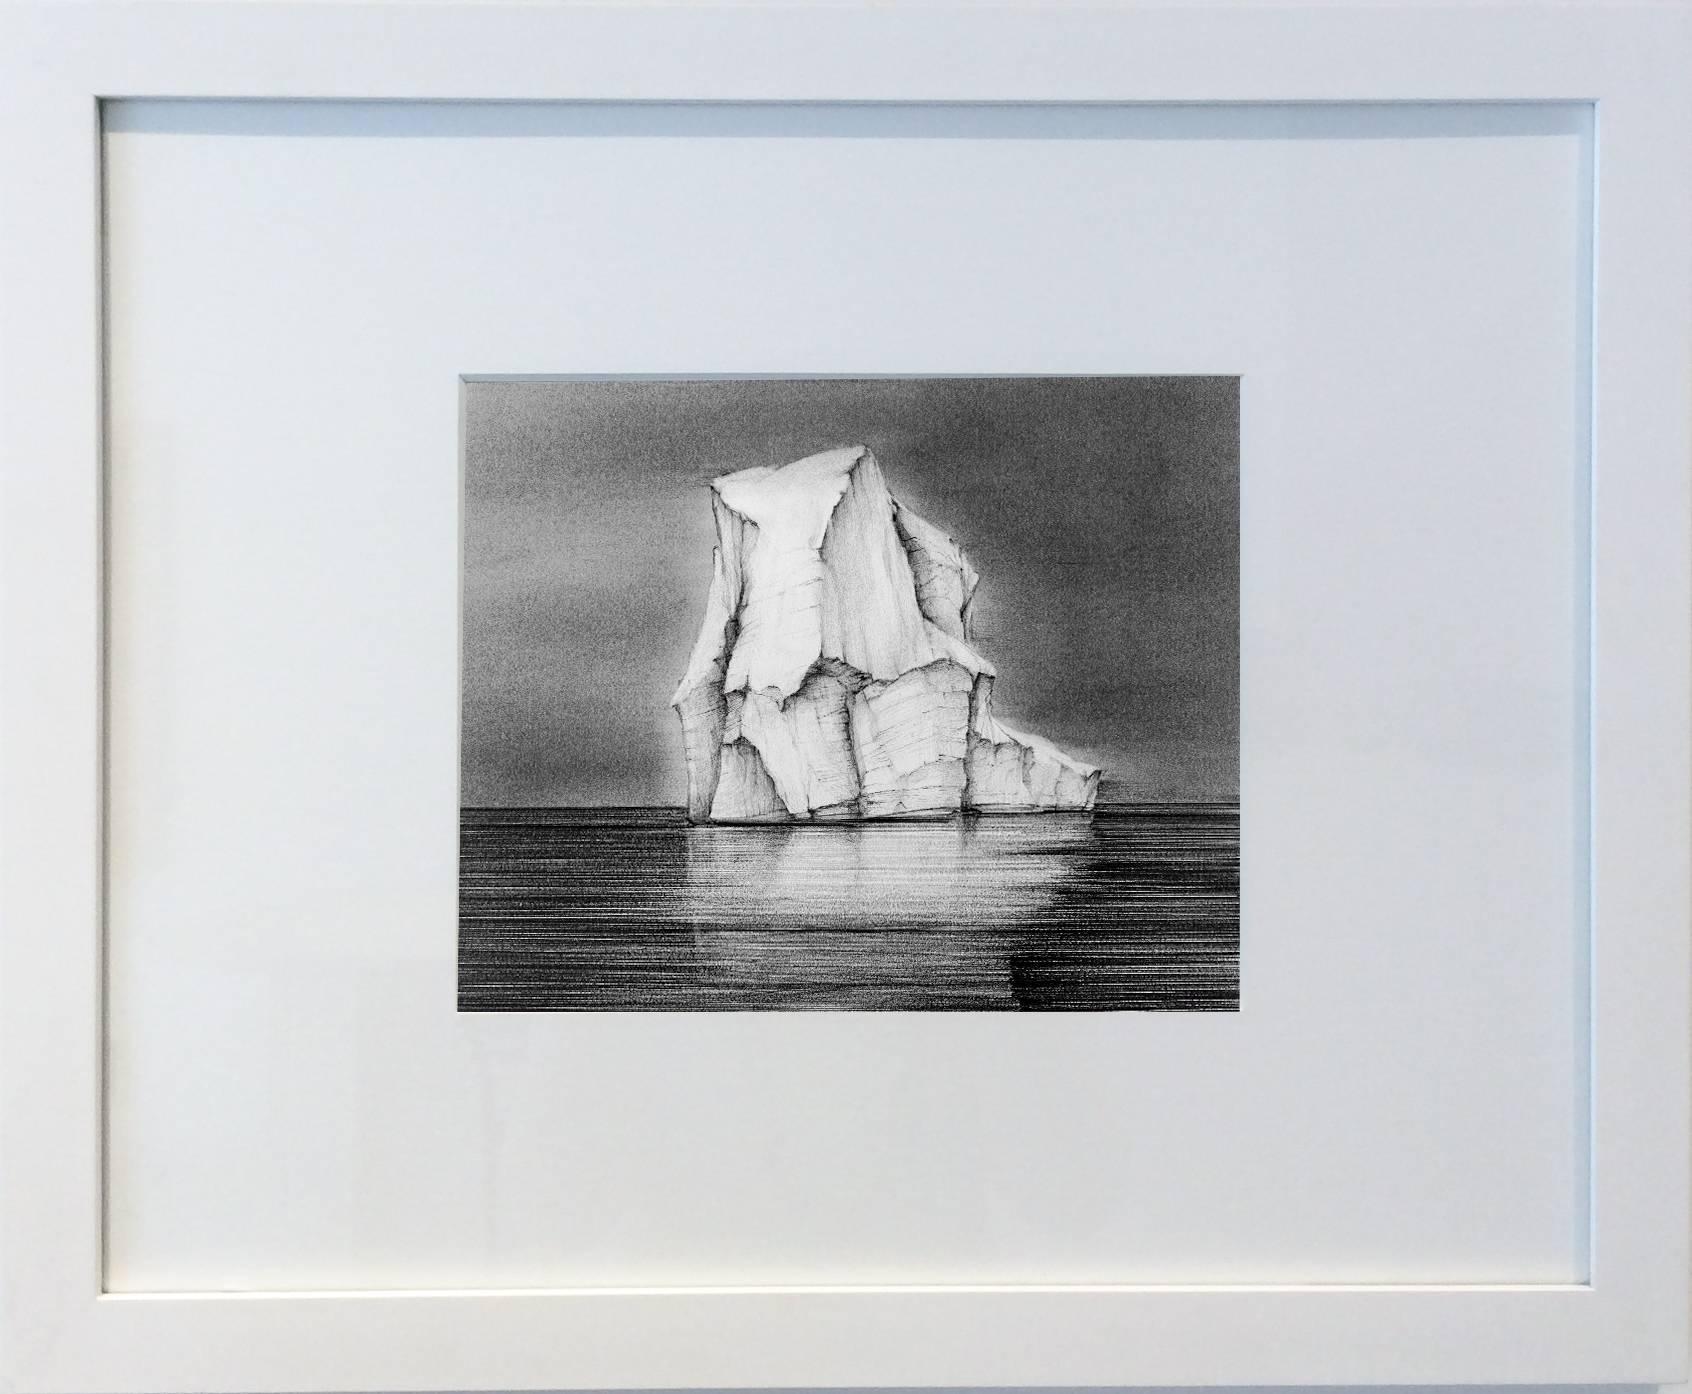 Dessin de Iceberg 3 : Dessin de paysage en noir et blanc représentant un iceberg dans l'eau, encadré - Art de Juan Garcia-Nunez